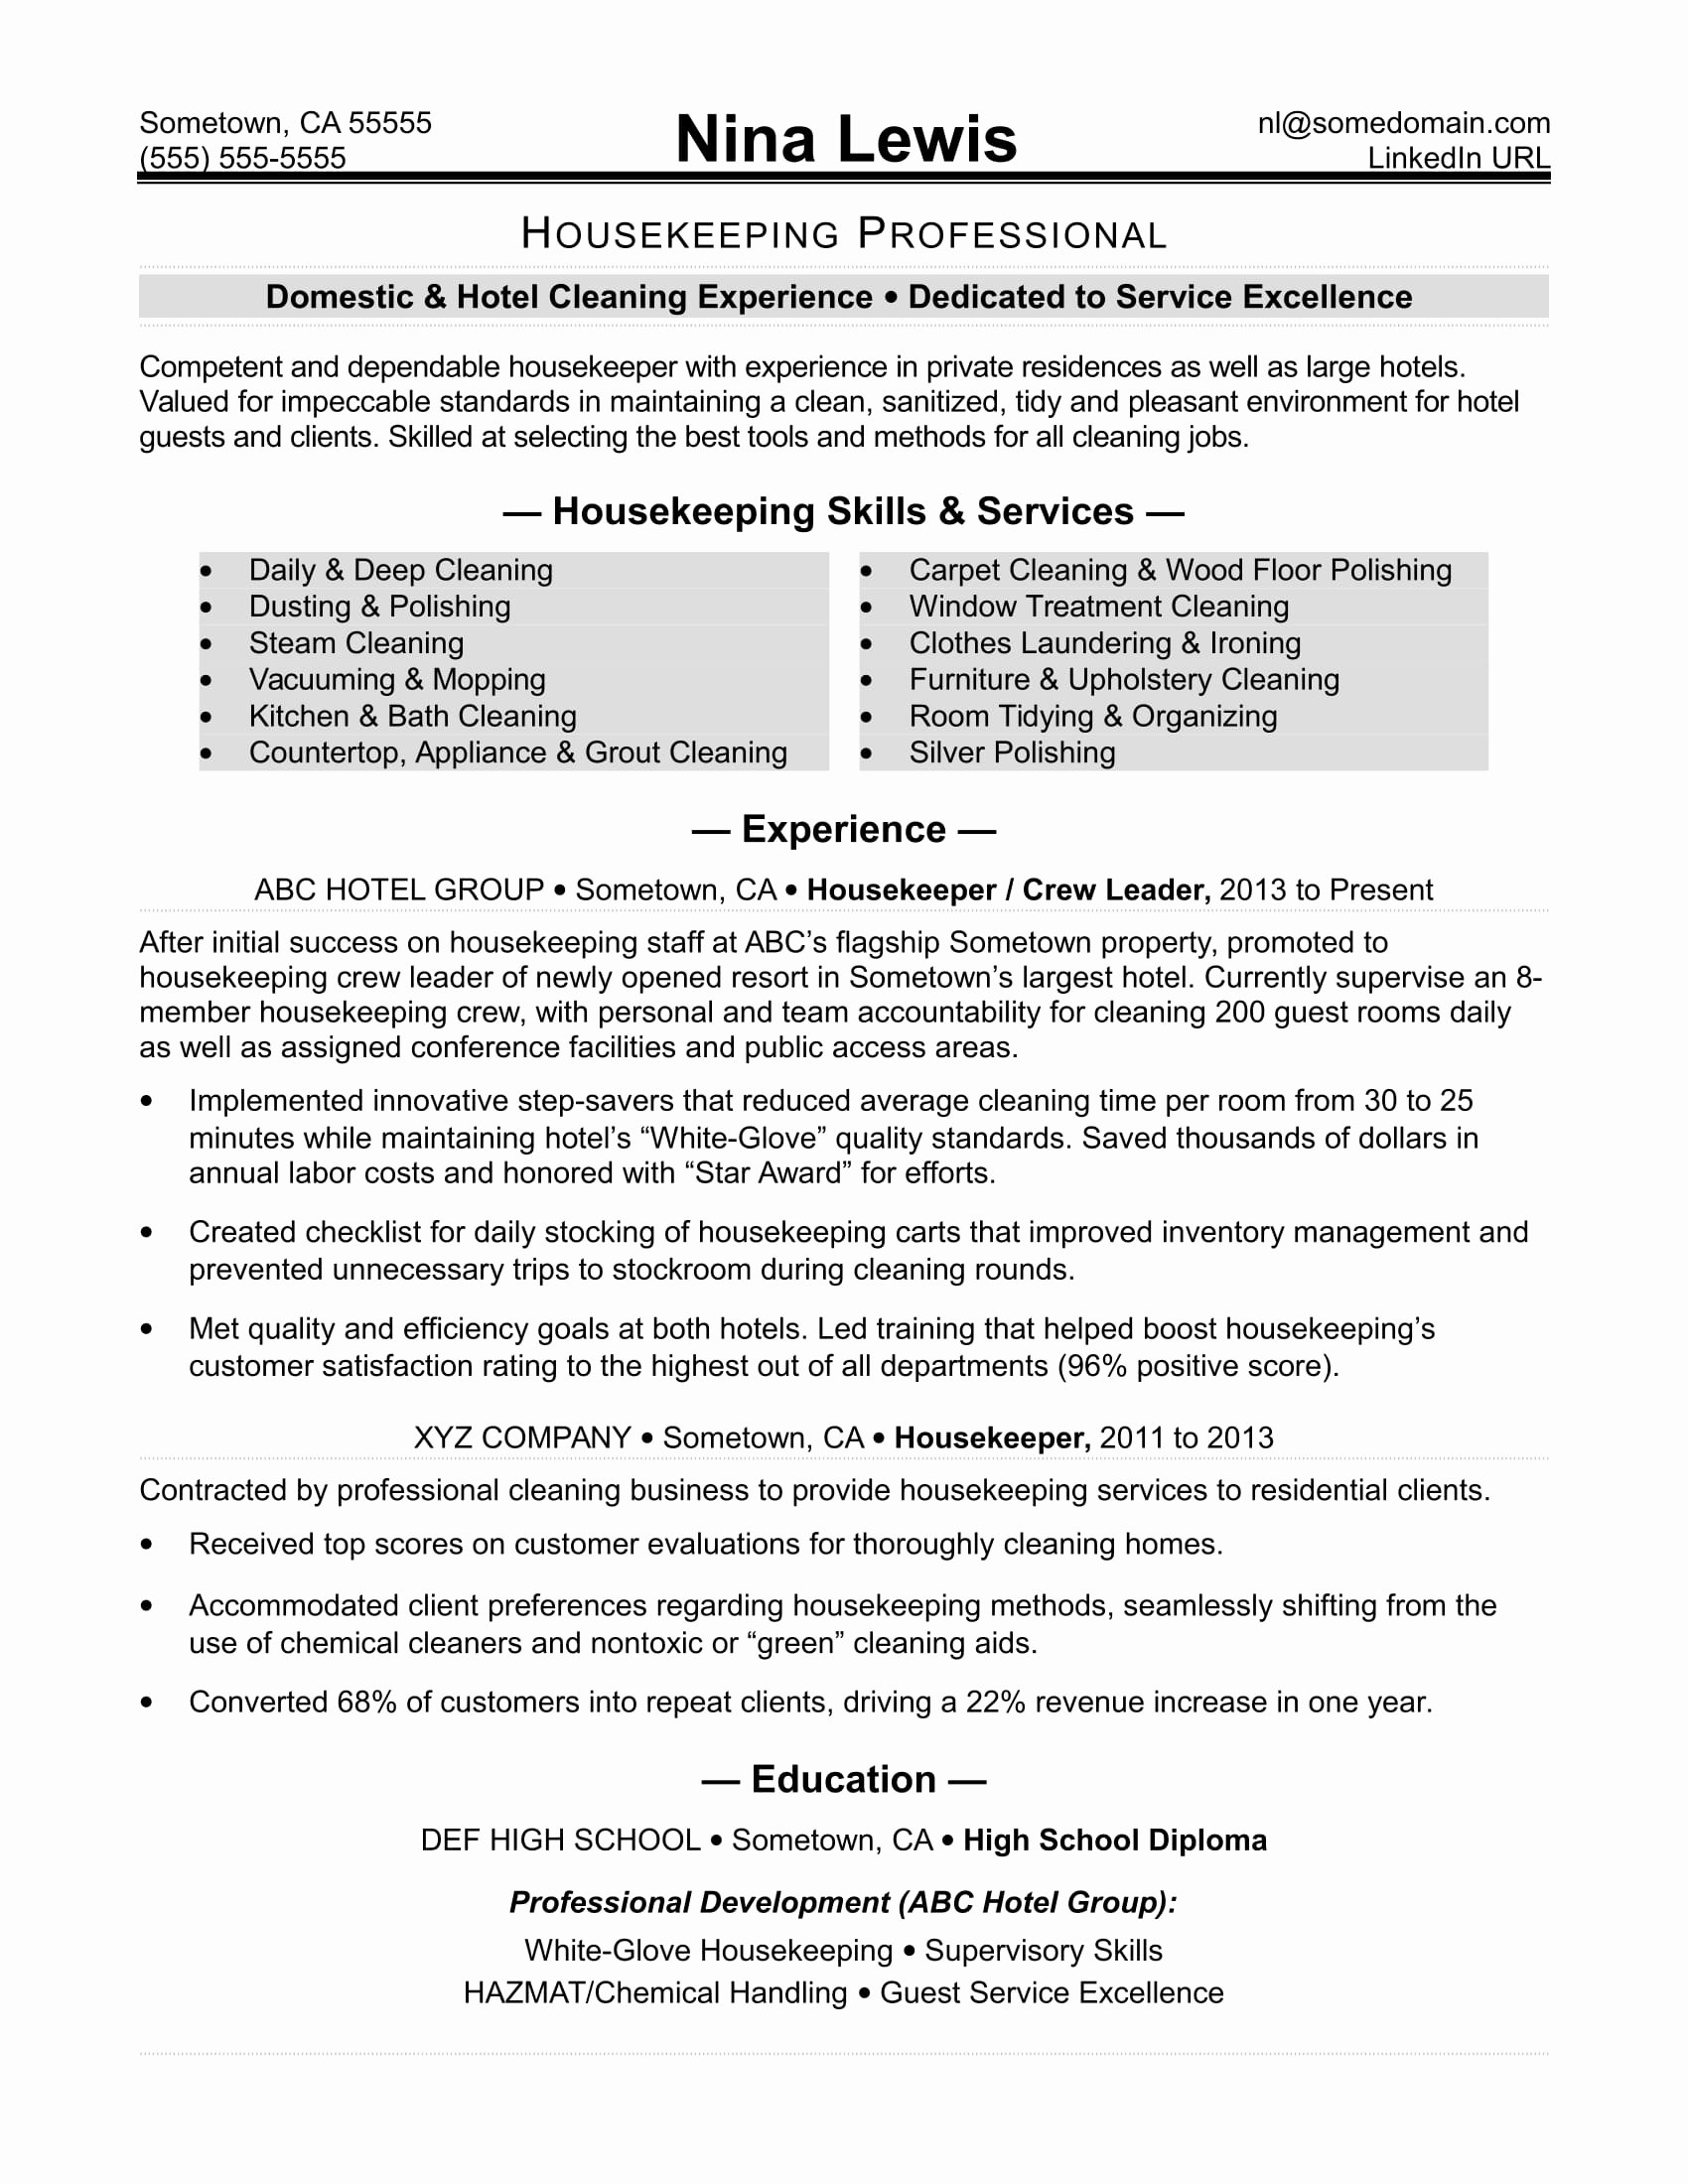 Housekeeping Resume Sample